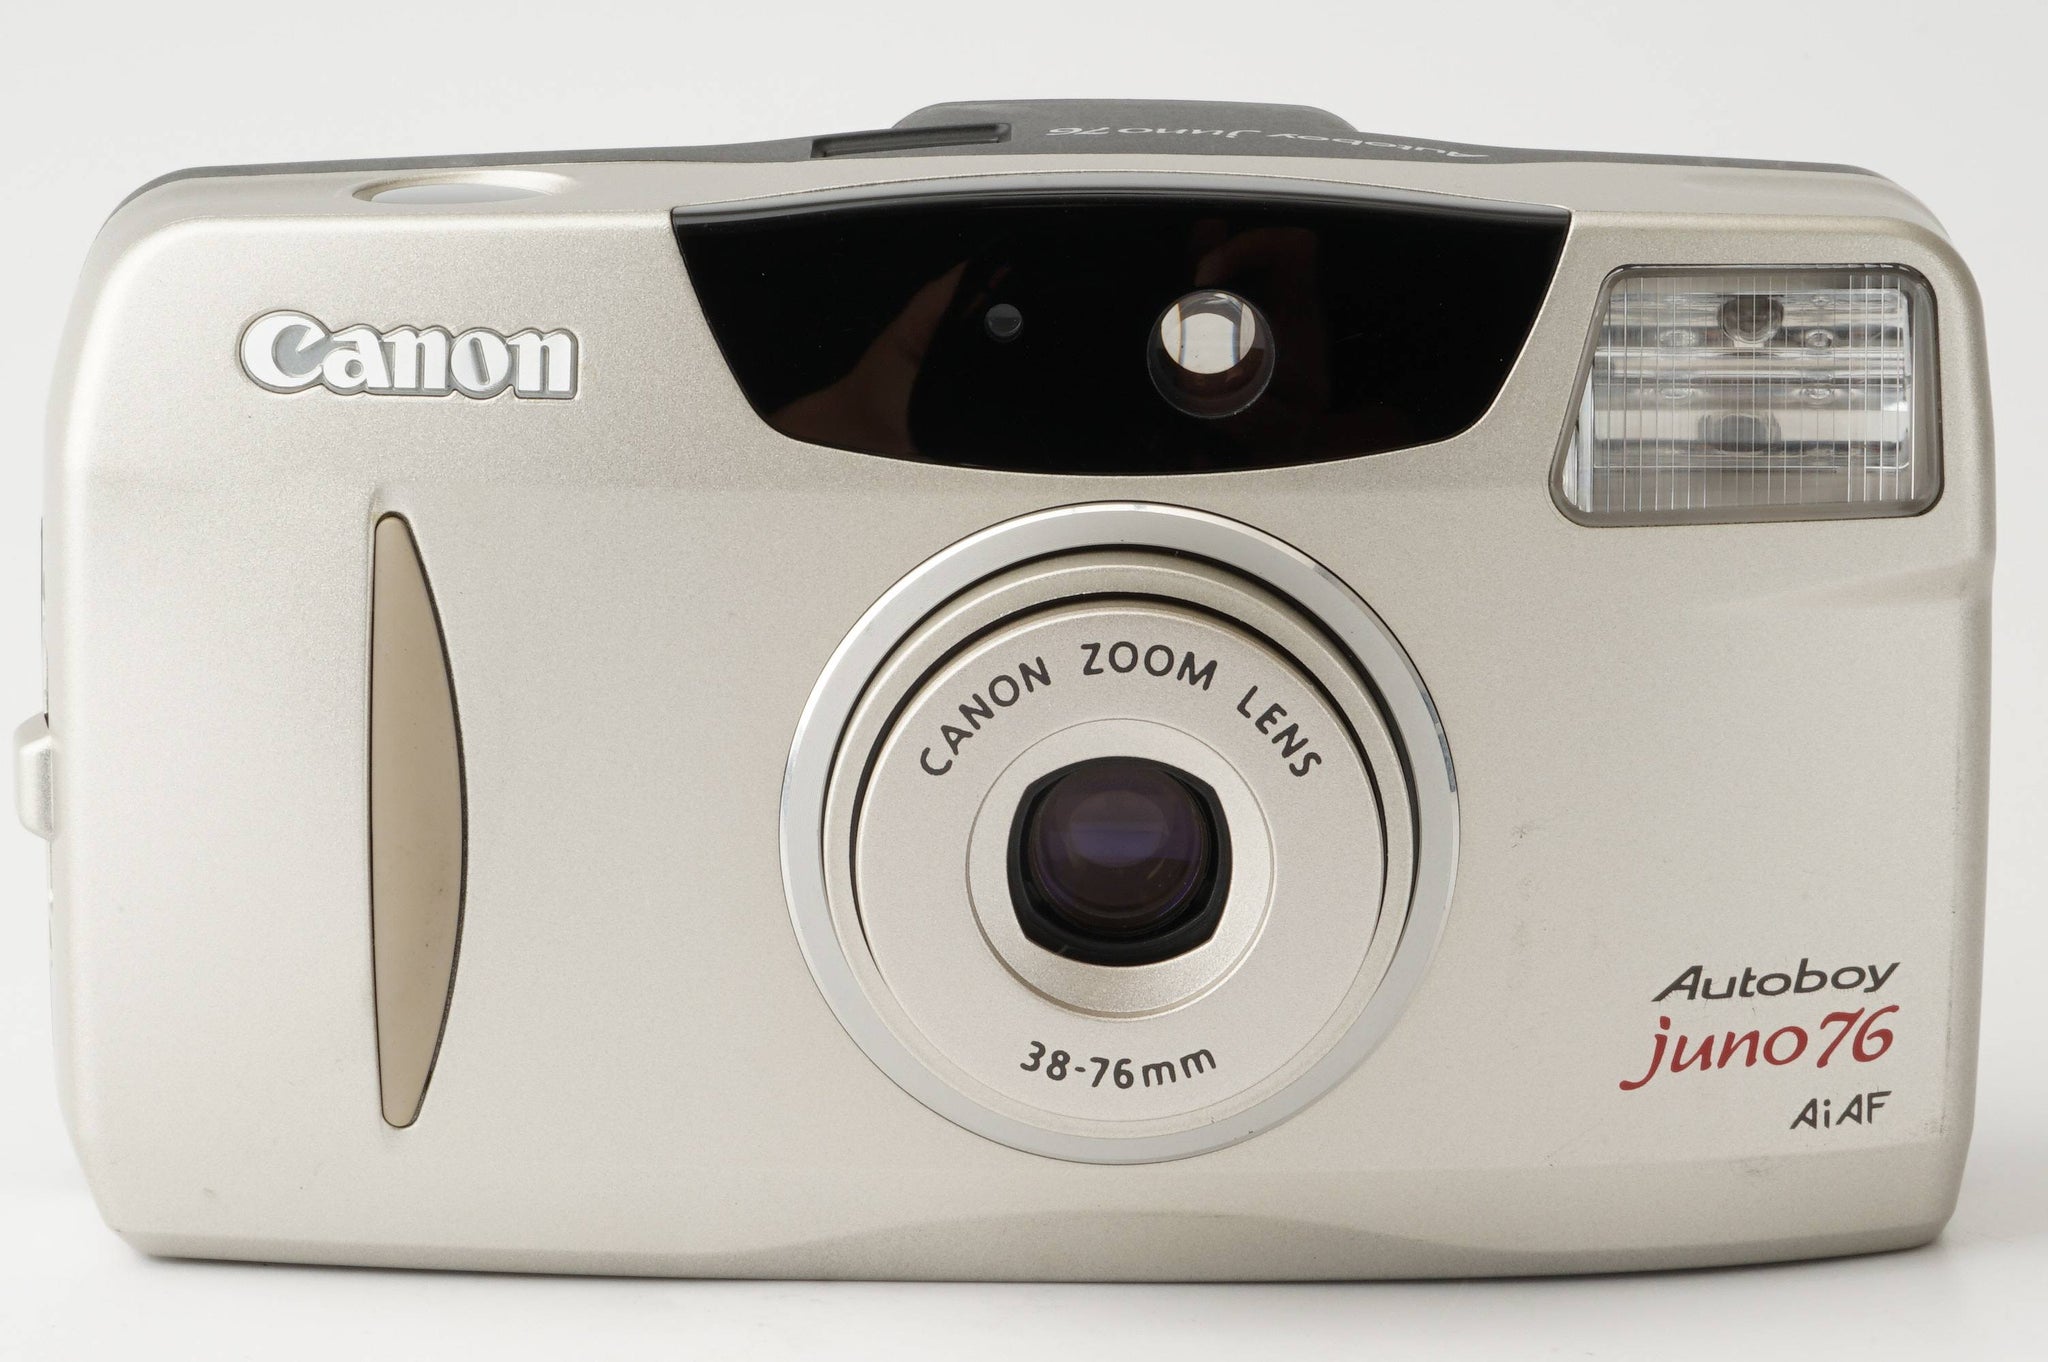 キヤノン Canon Autoboy juno 76 Ai AF / ZOOM 38-76mm – Natural